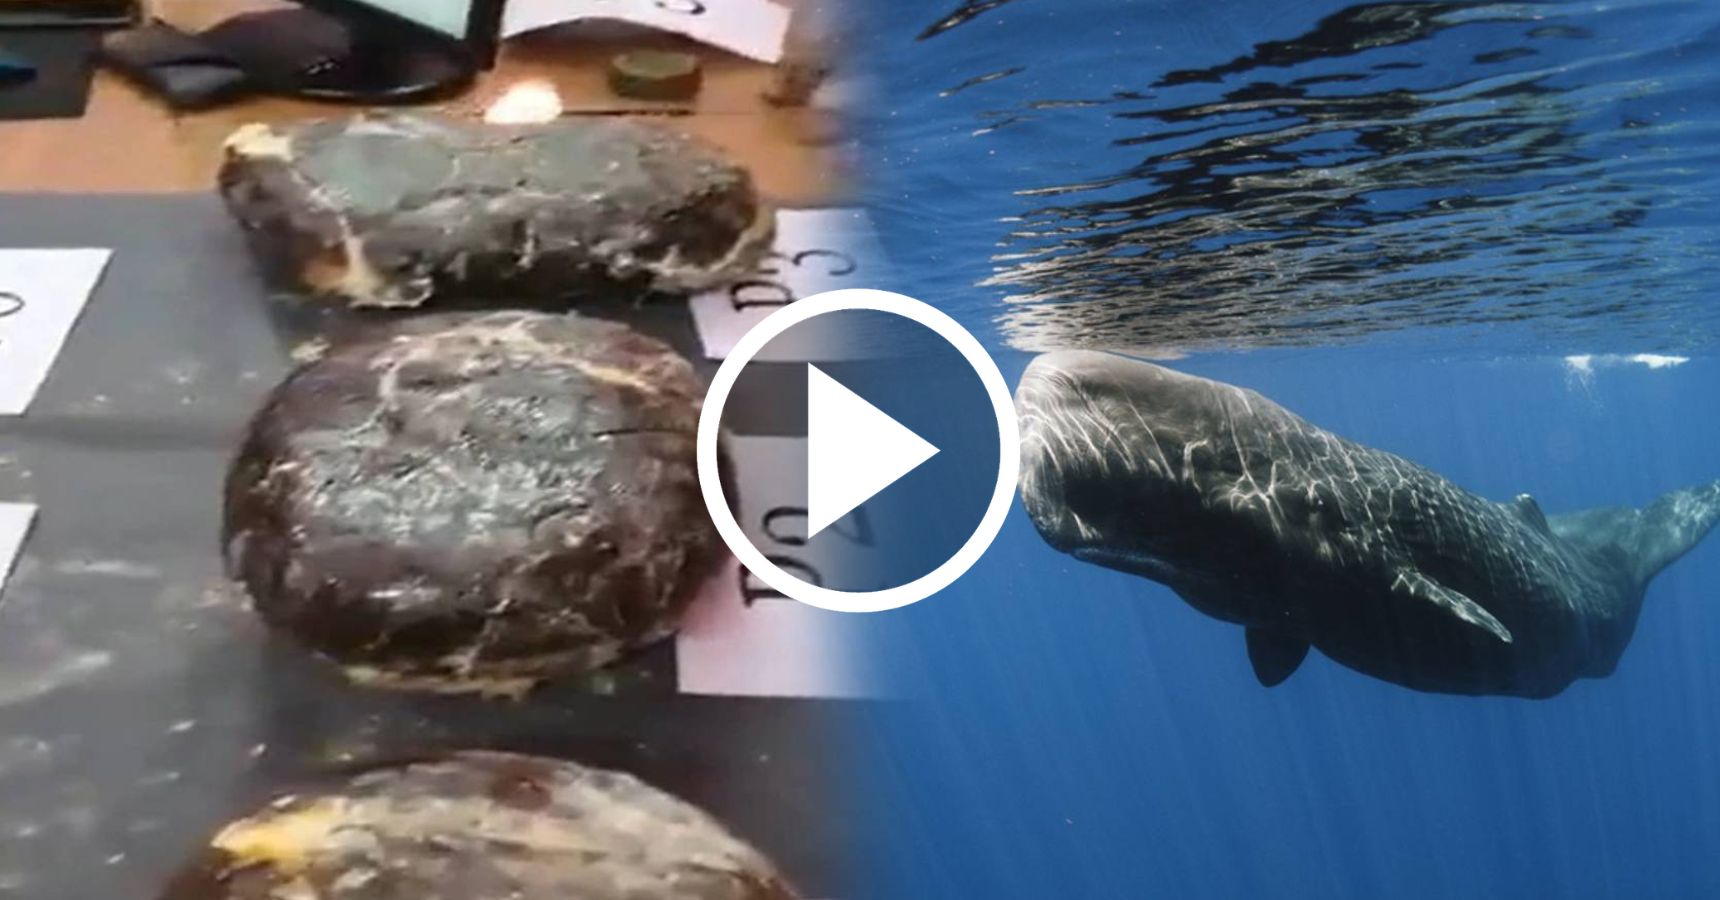 sperm whale vomit video